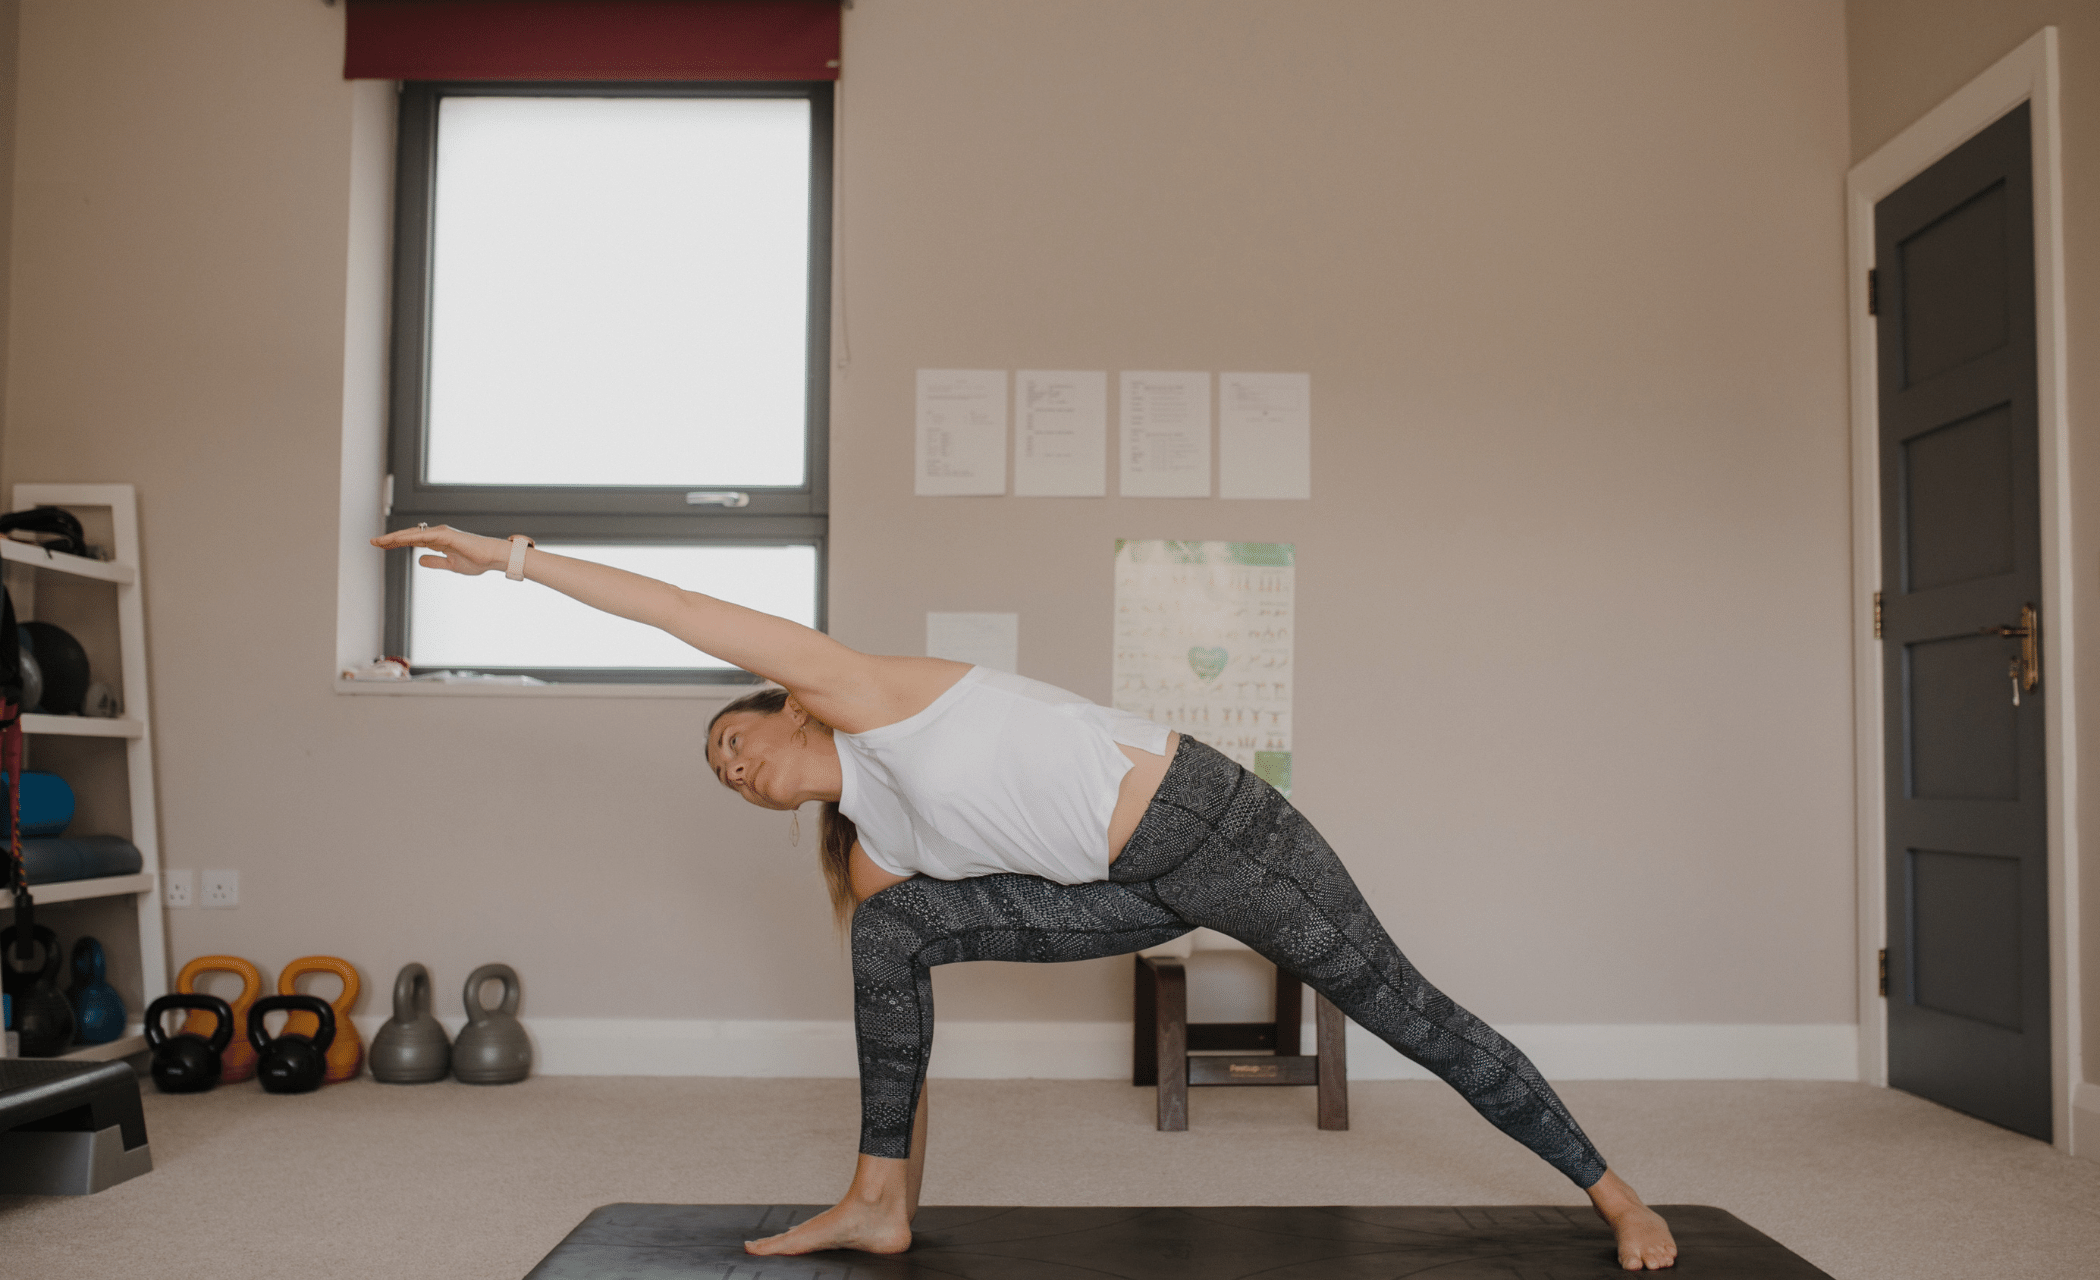 Yoga Stretch